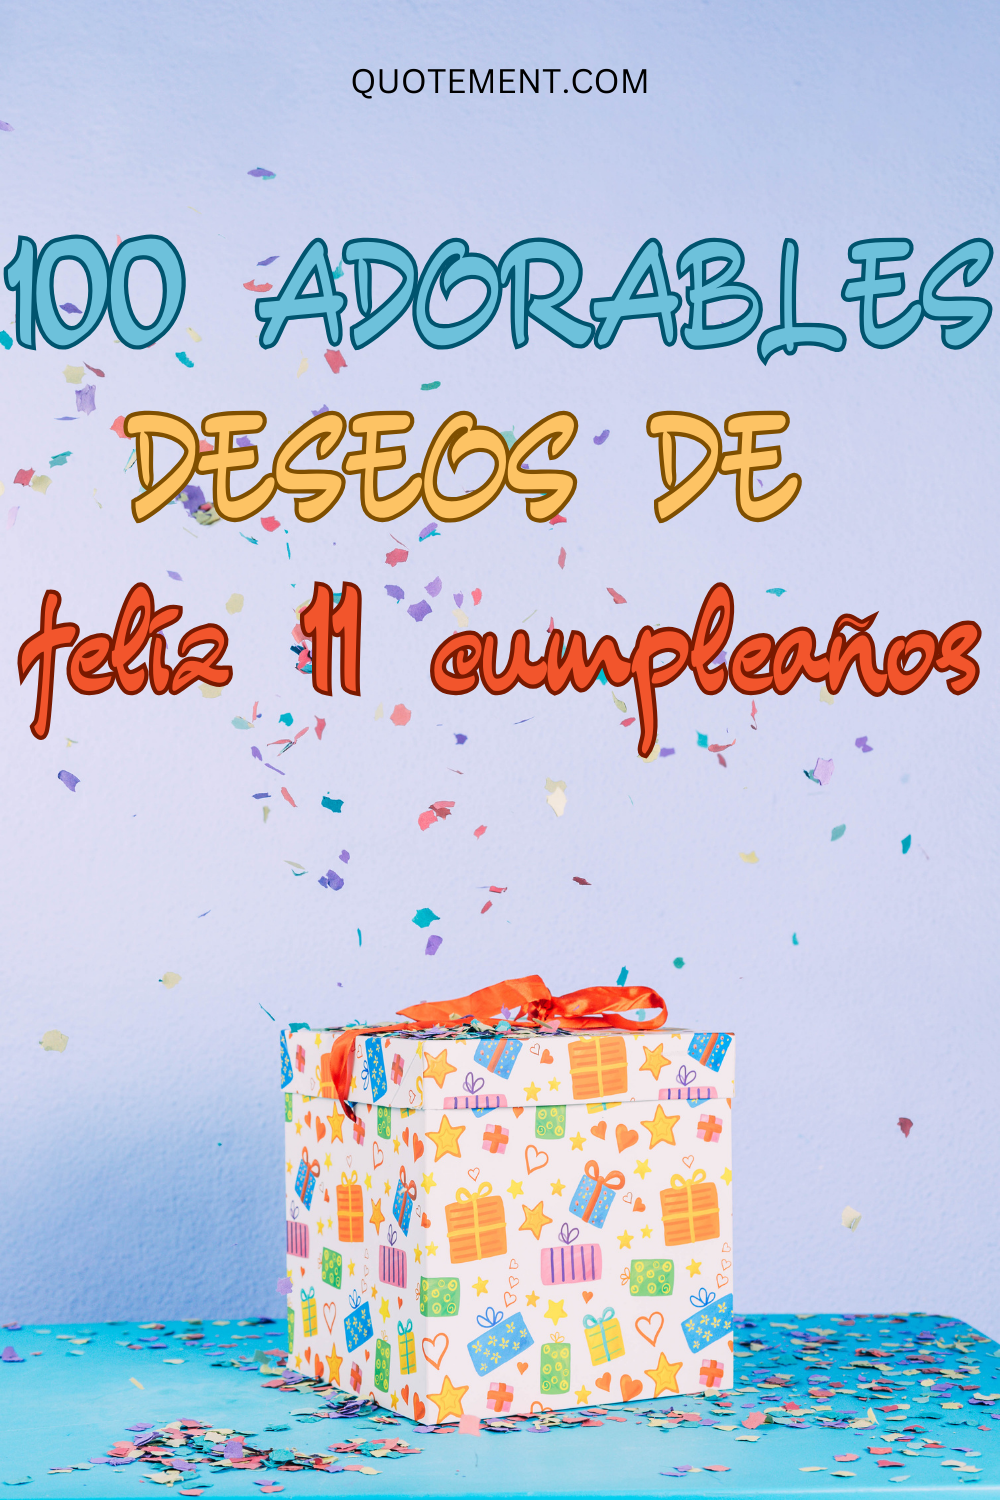 100 adorables deseos de feliz 11 cumpleaños para su gran día